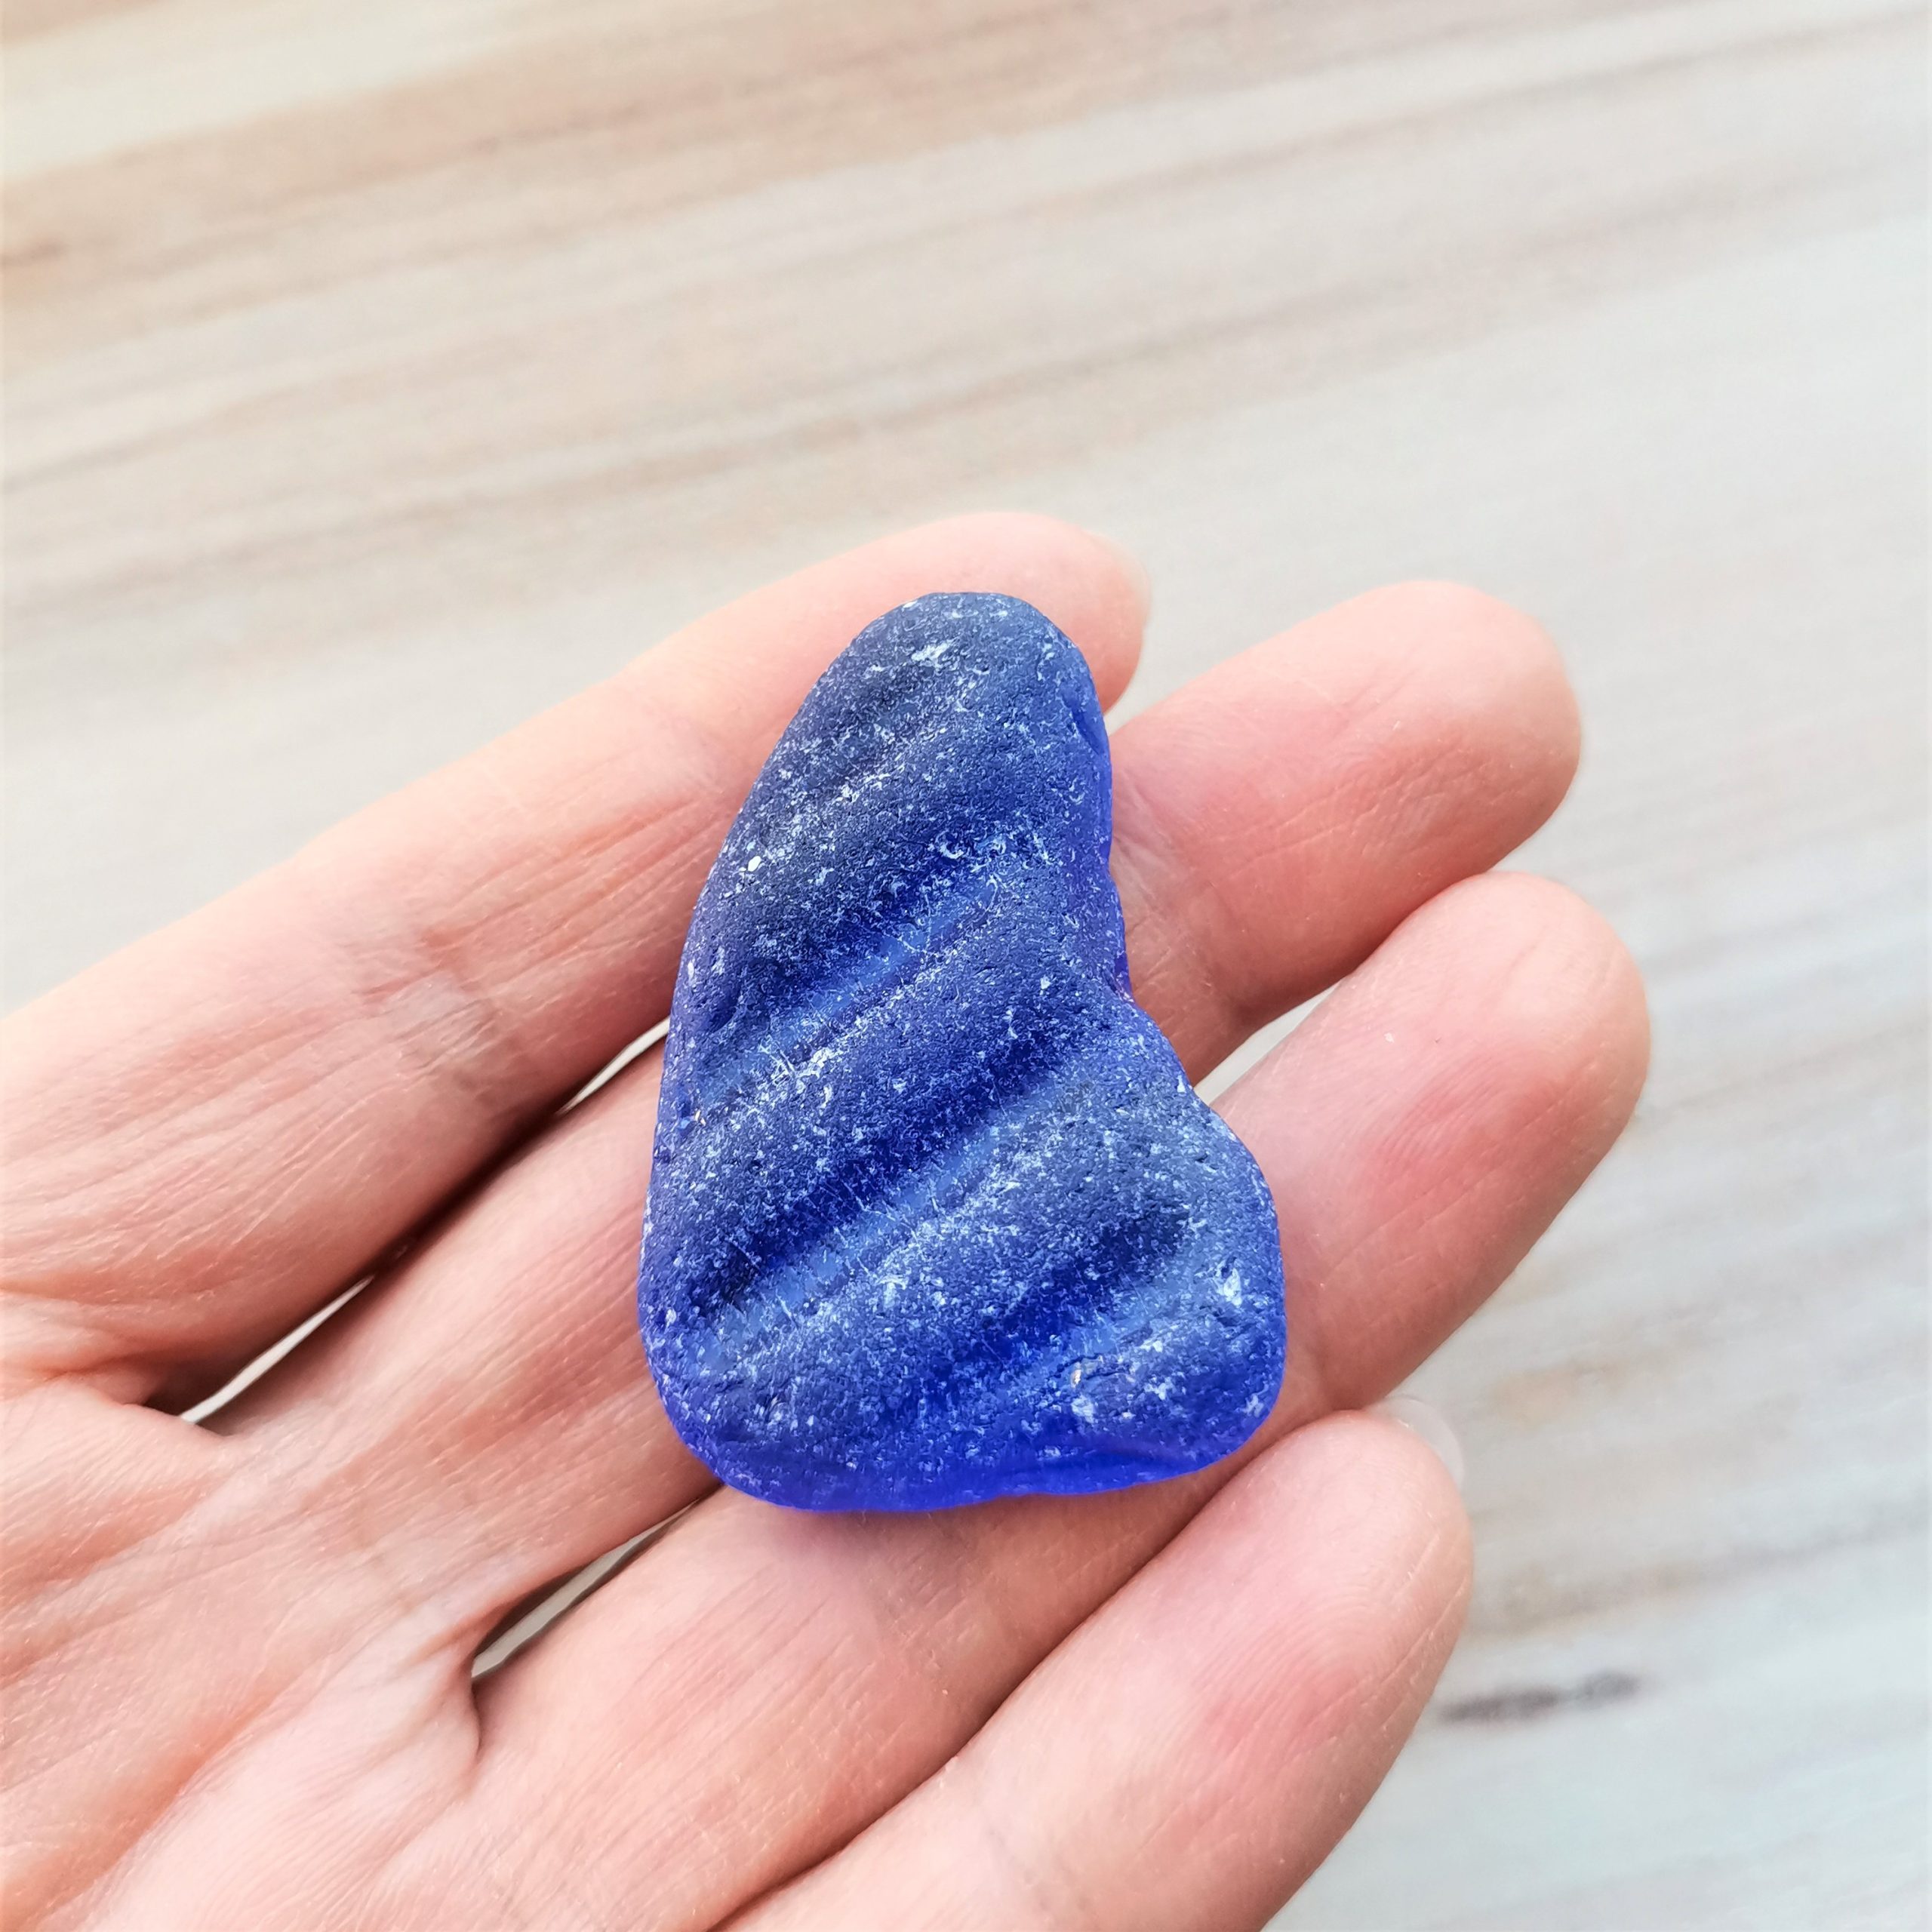 Cobalt blue genuine sea glass